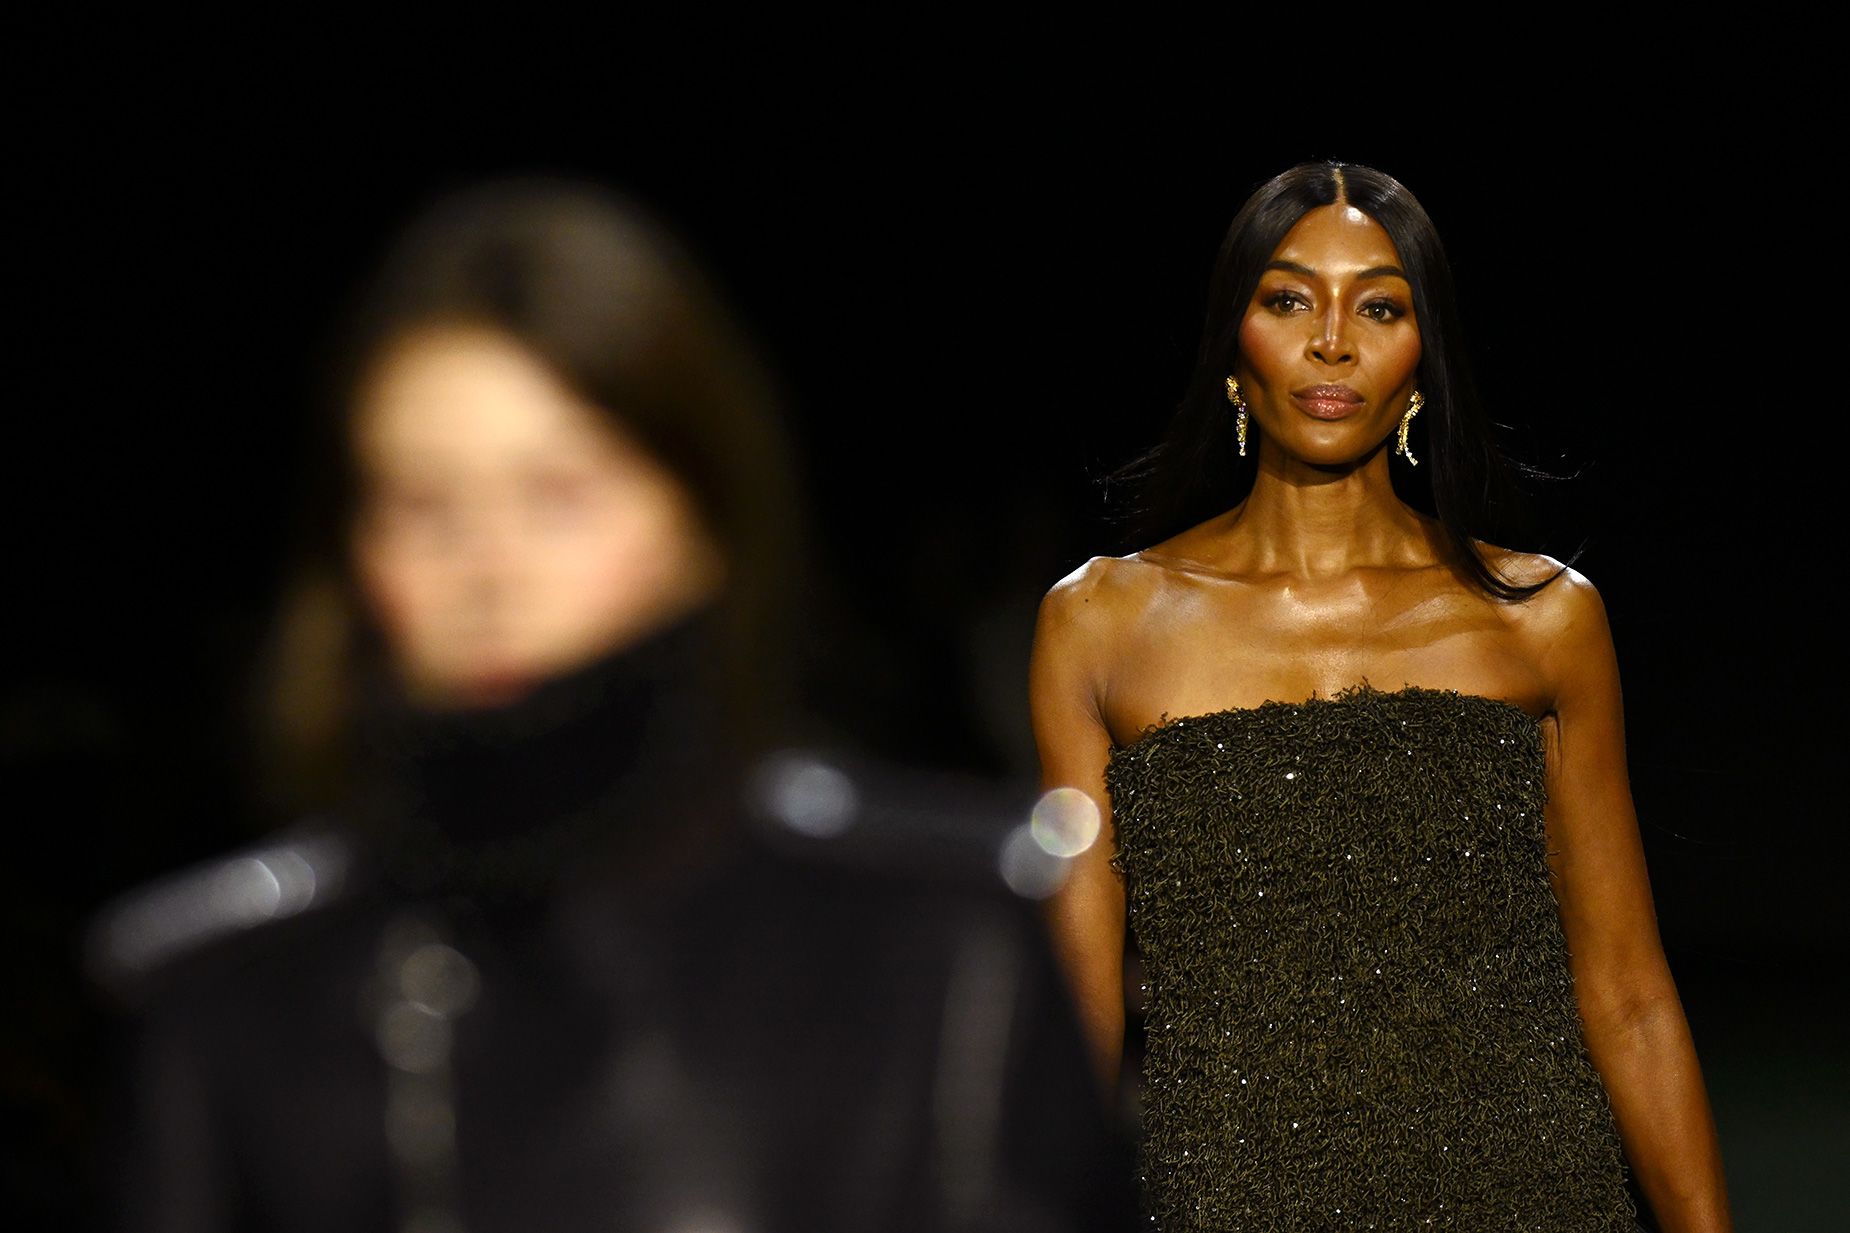 Hoàng gia thời trang Naomi Campbell rạng ngời tại buổi trình diễn thời trang mới nhất của Burberry ở London.